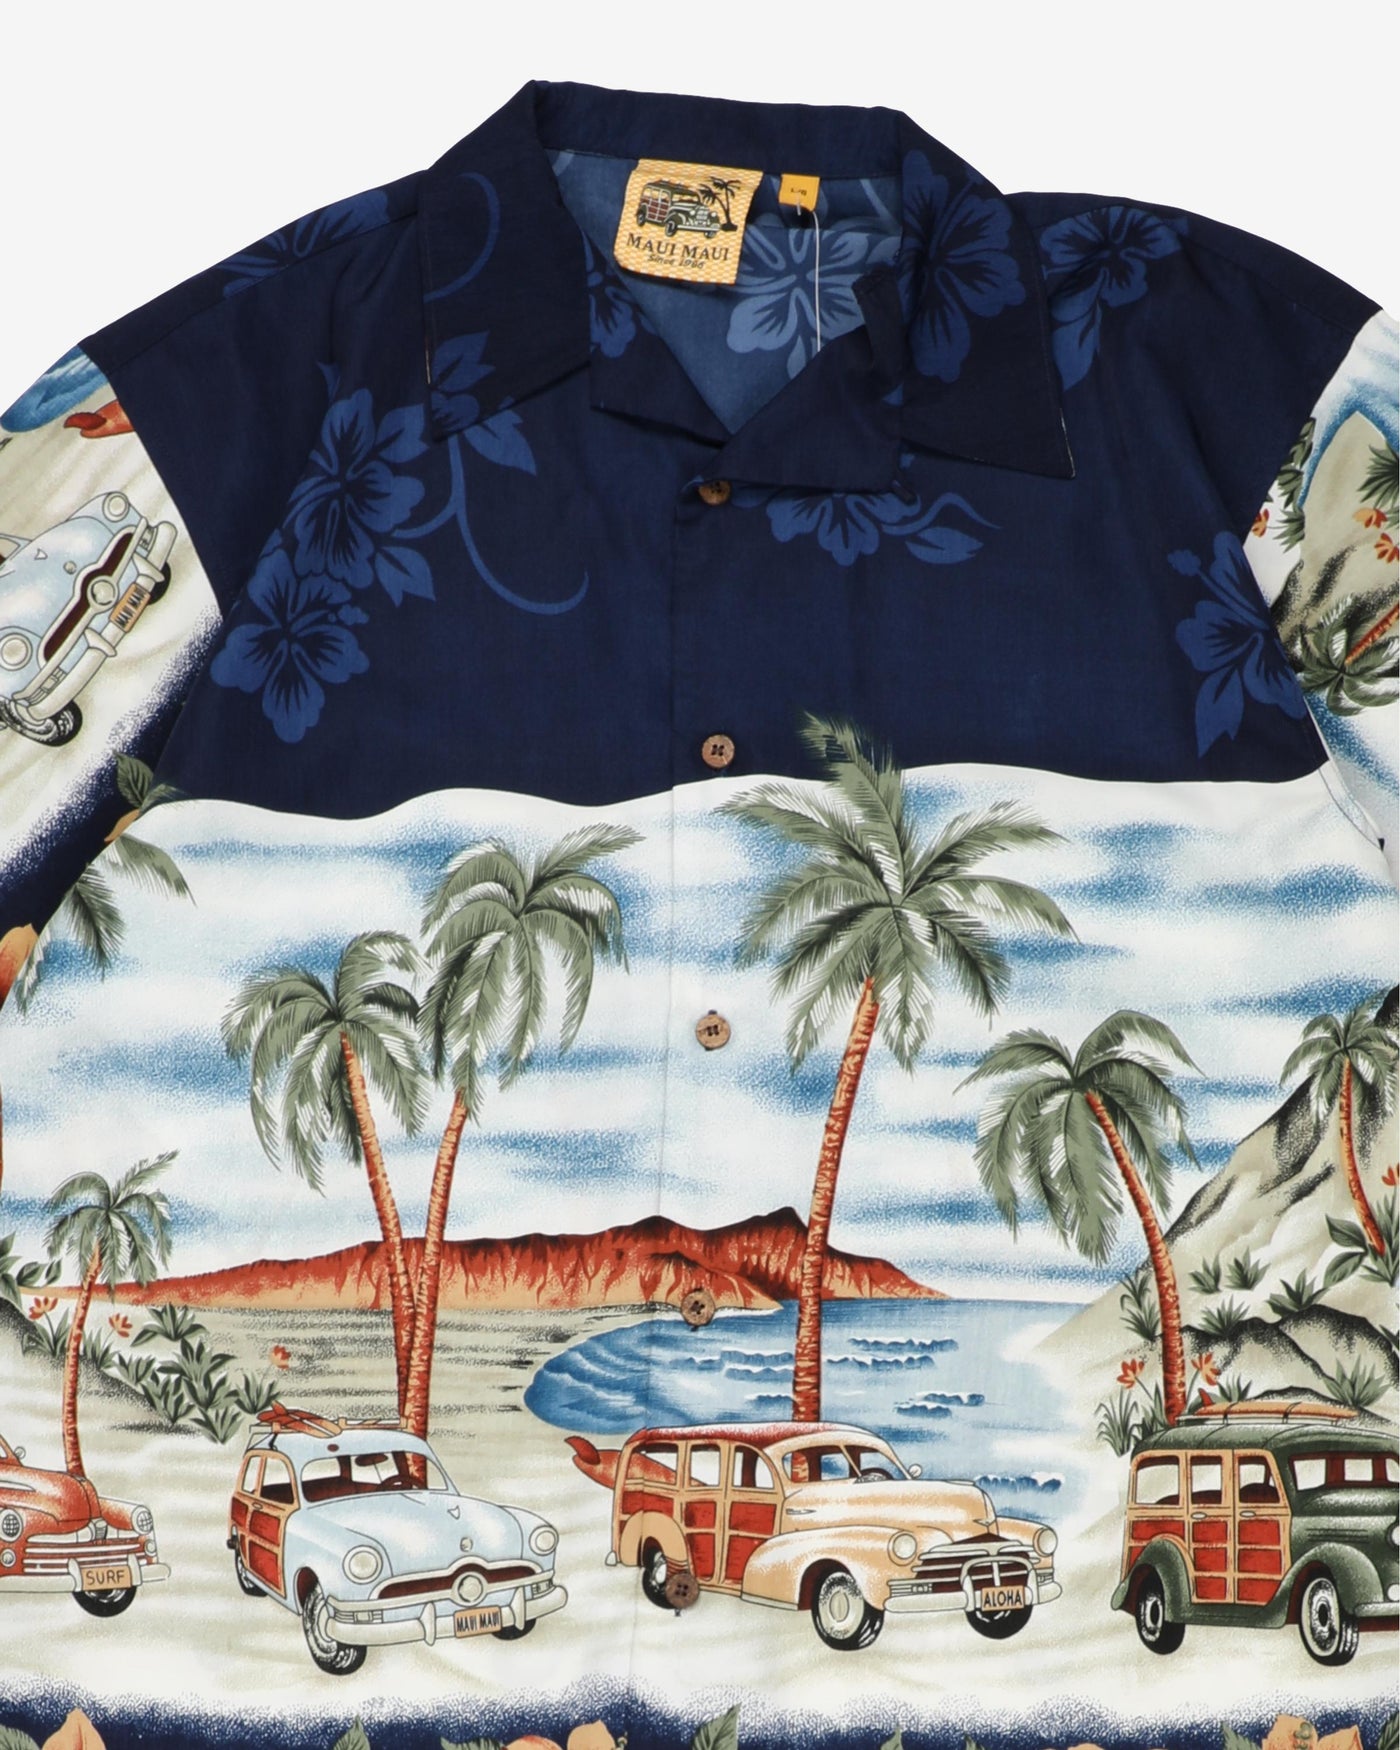 Vintage 80s Maui Maui Hawaiian Shirt - L